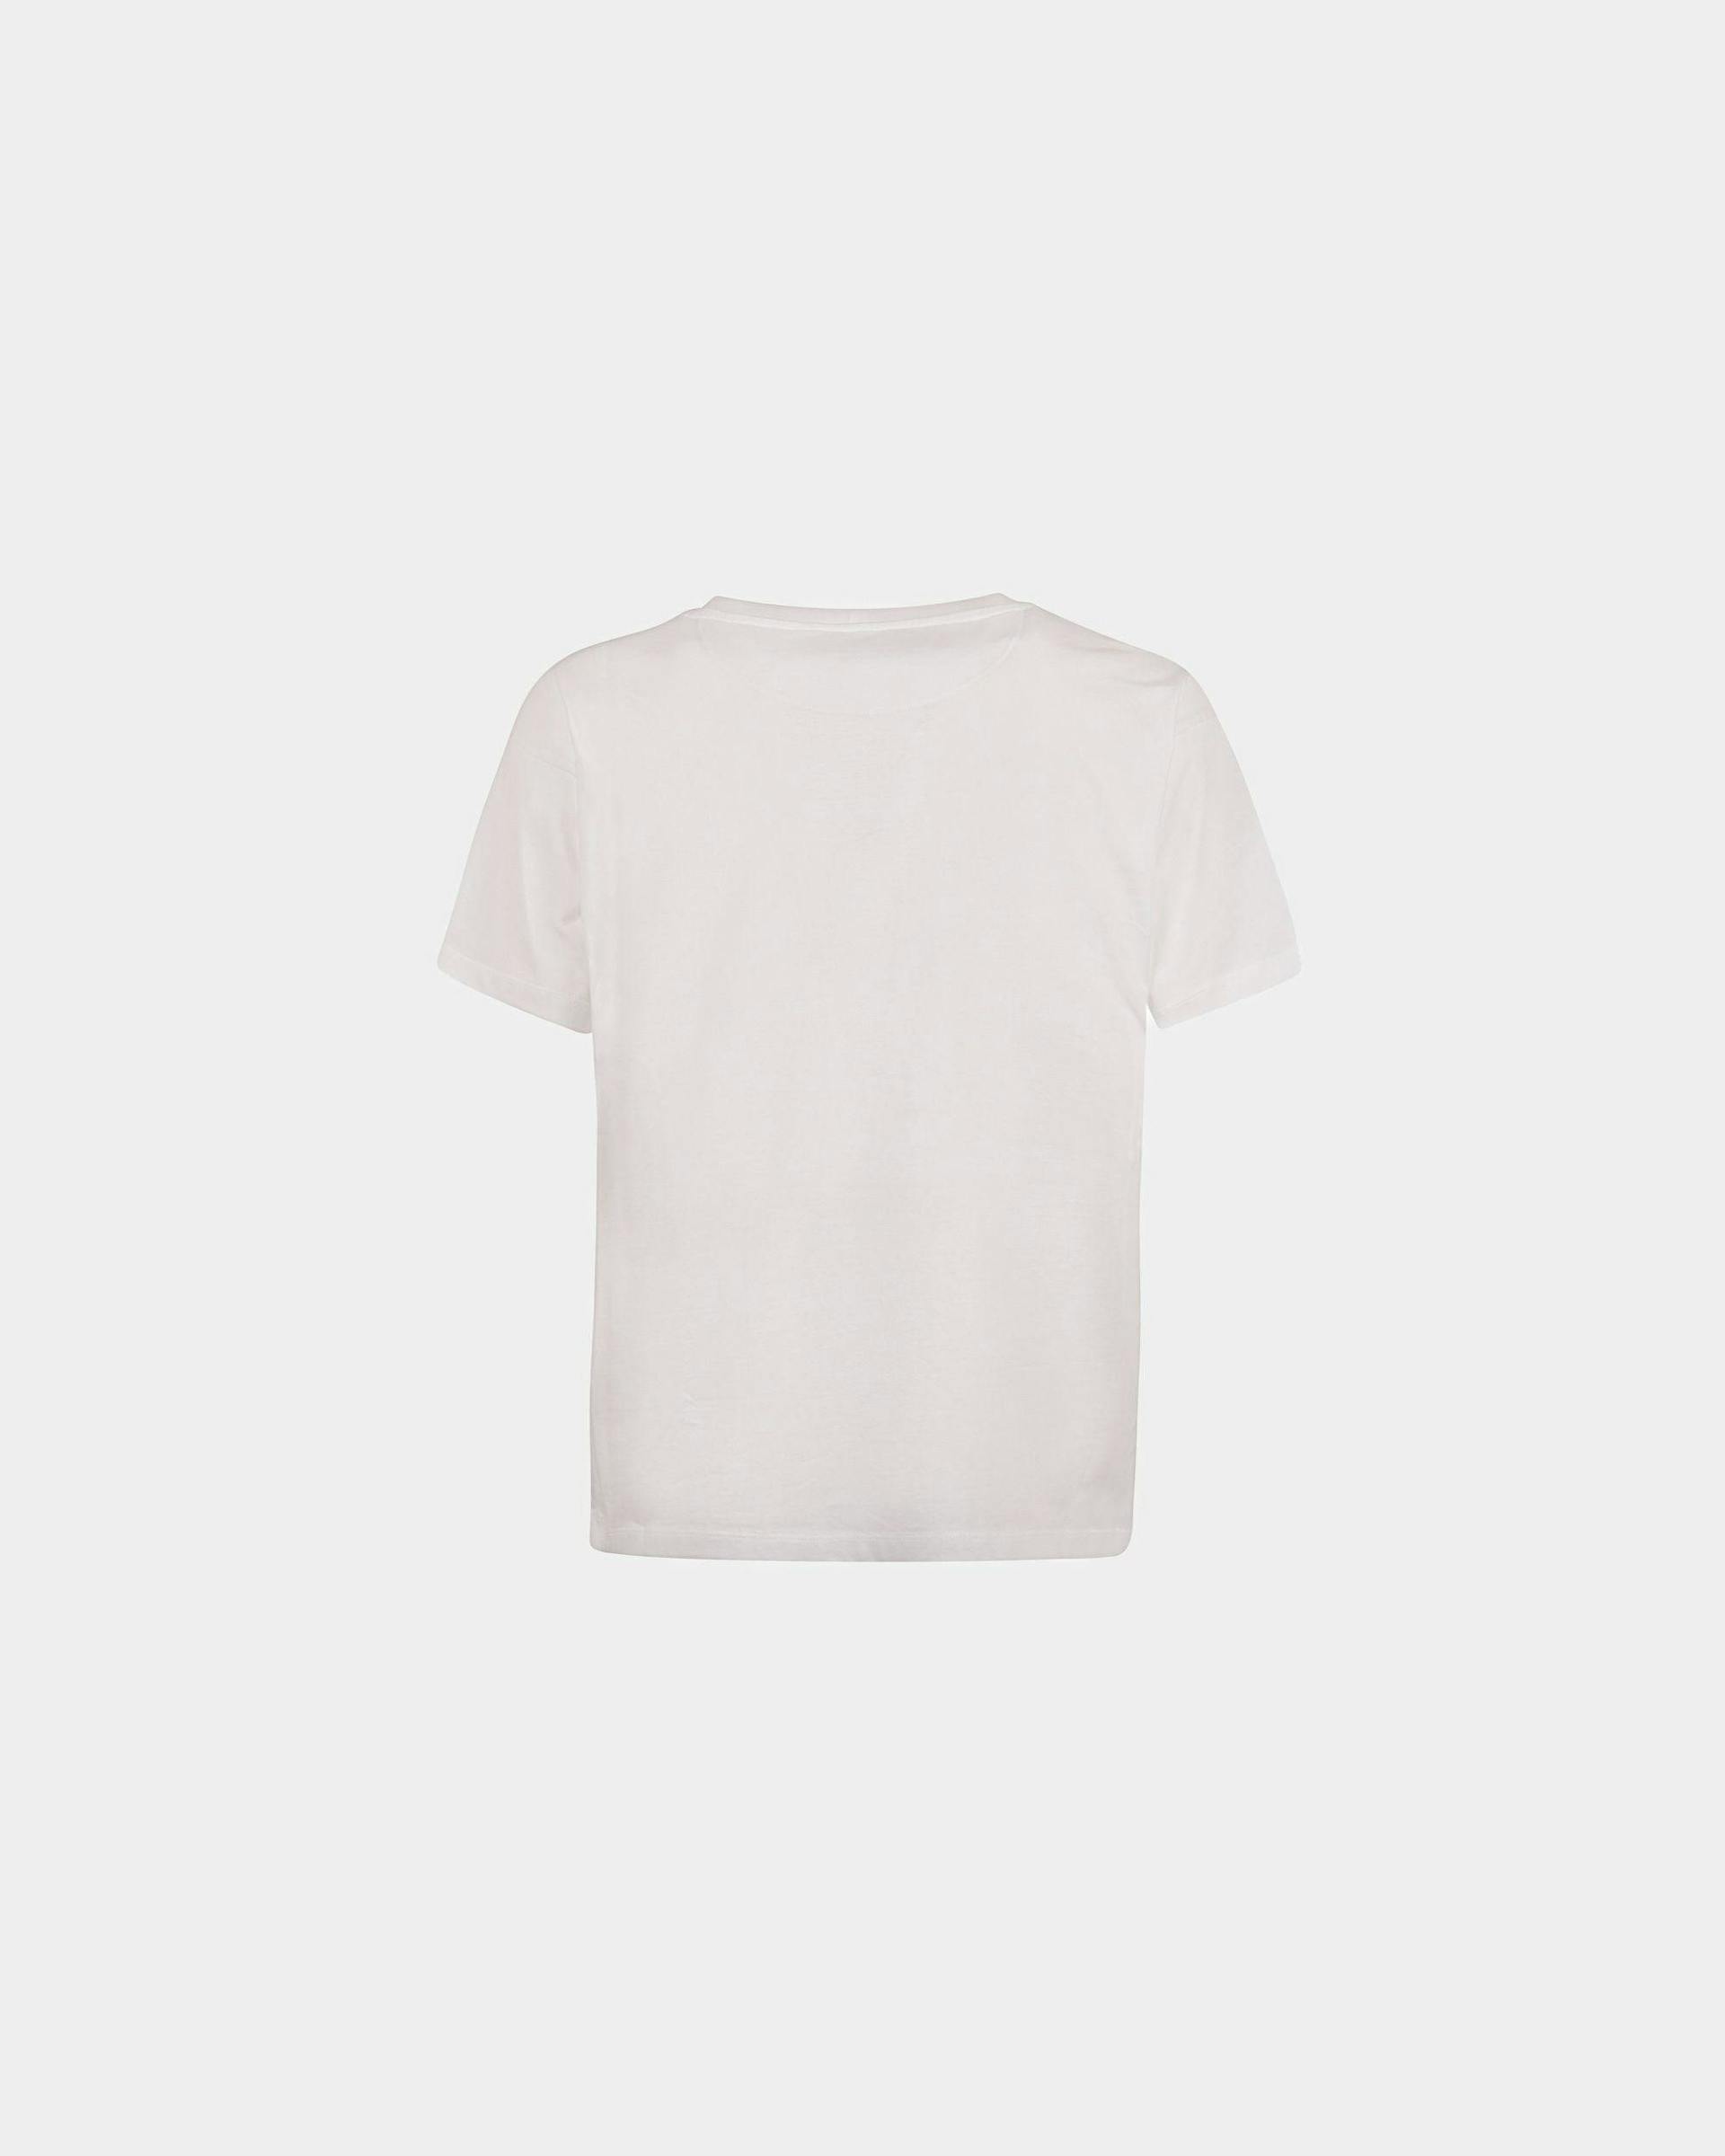 Men's Shirt In White Cotton | Bally | Still Life Back